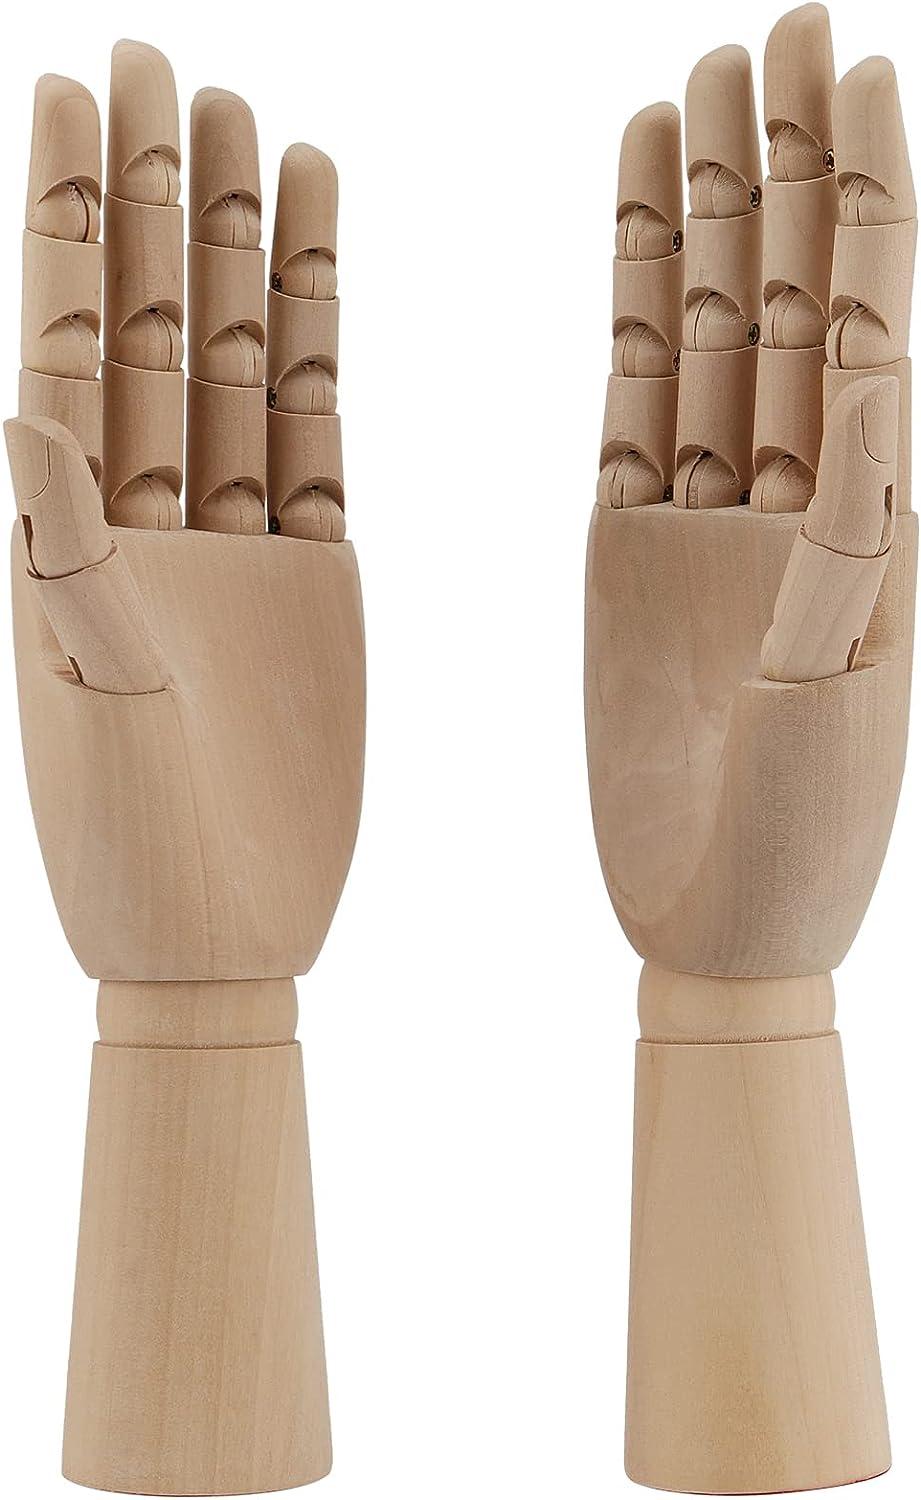 Wood Manikin / Mannequin Hand (12 high) –